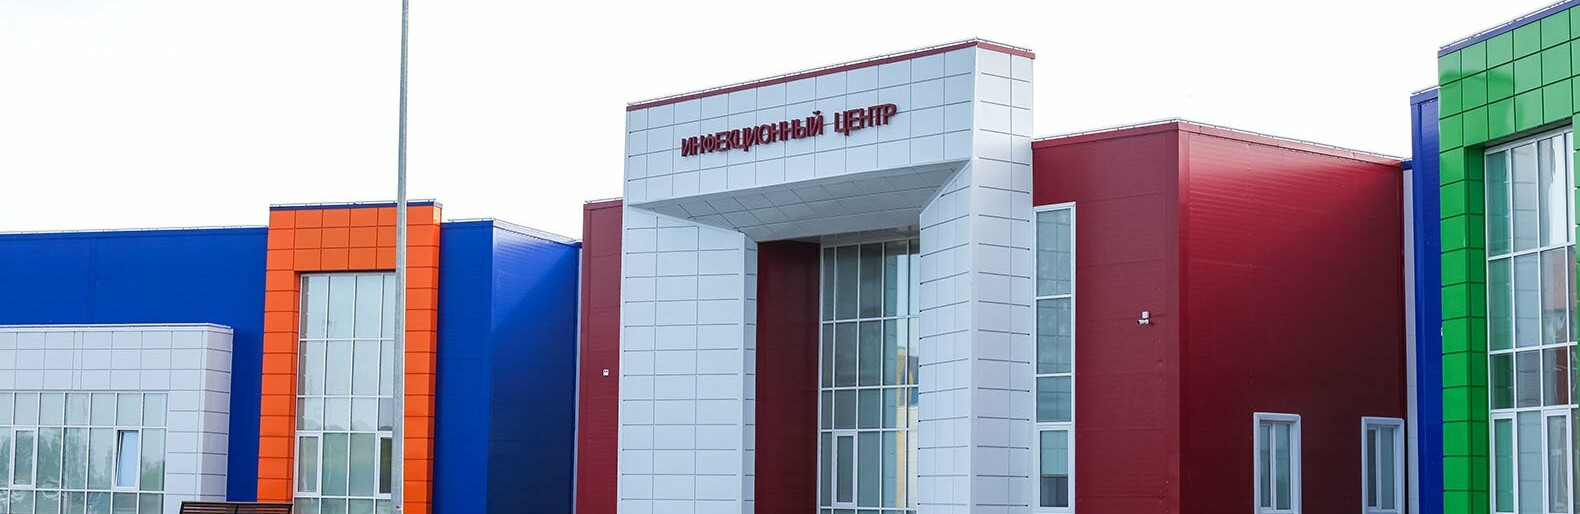 В Белгороде проведут служебное расследование после жалобы на ковидный центр в Терновке